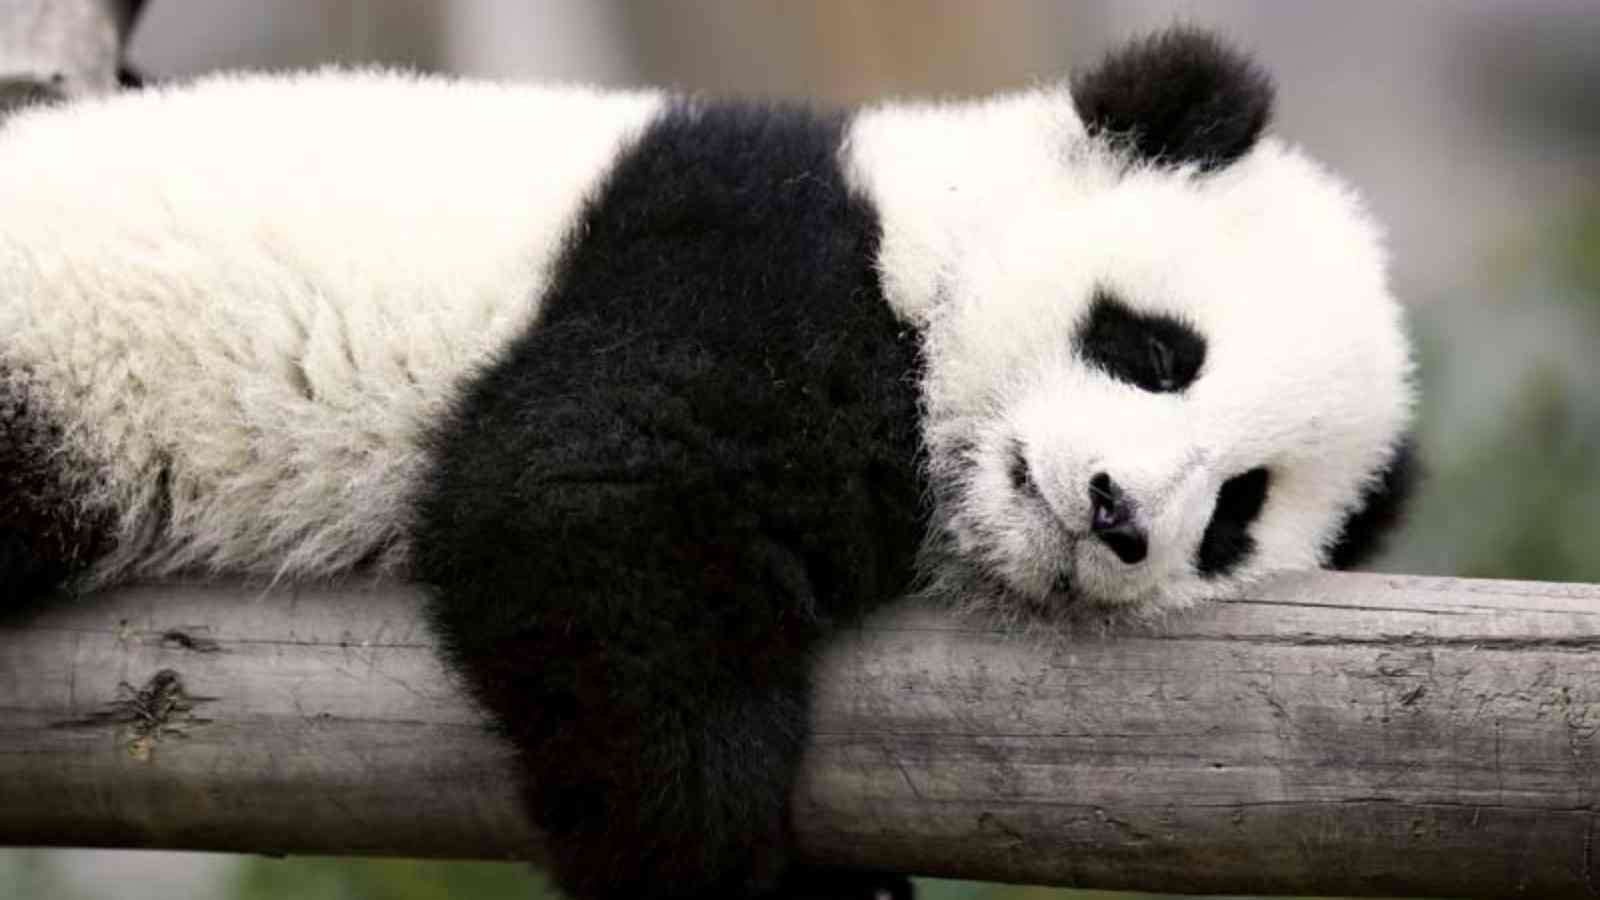 Lazy Panda